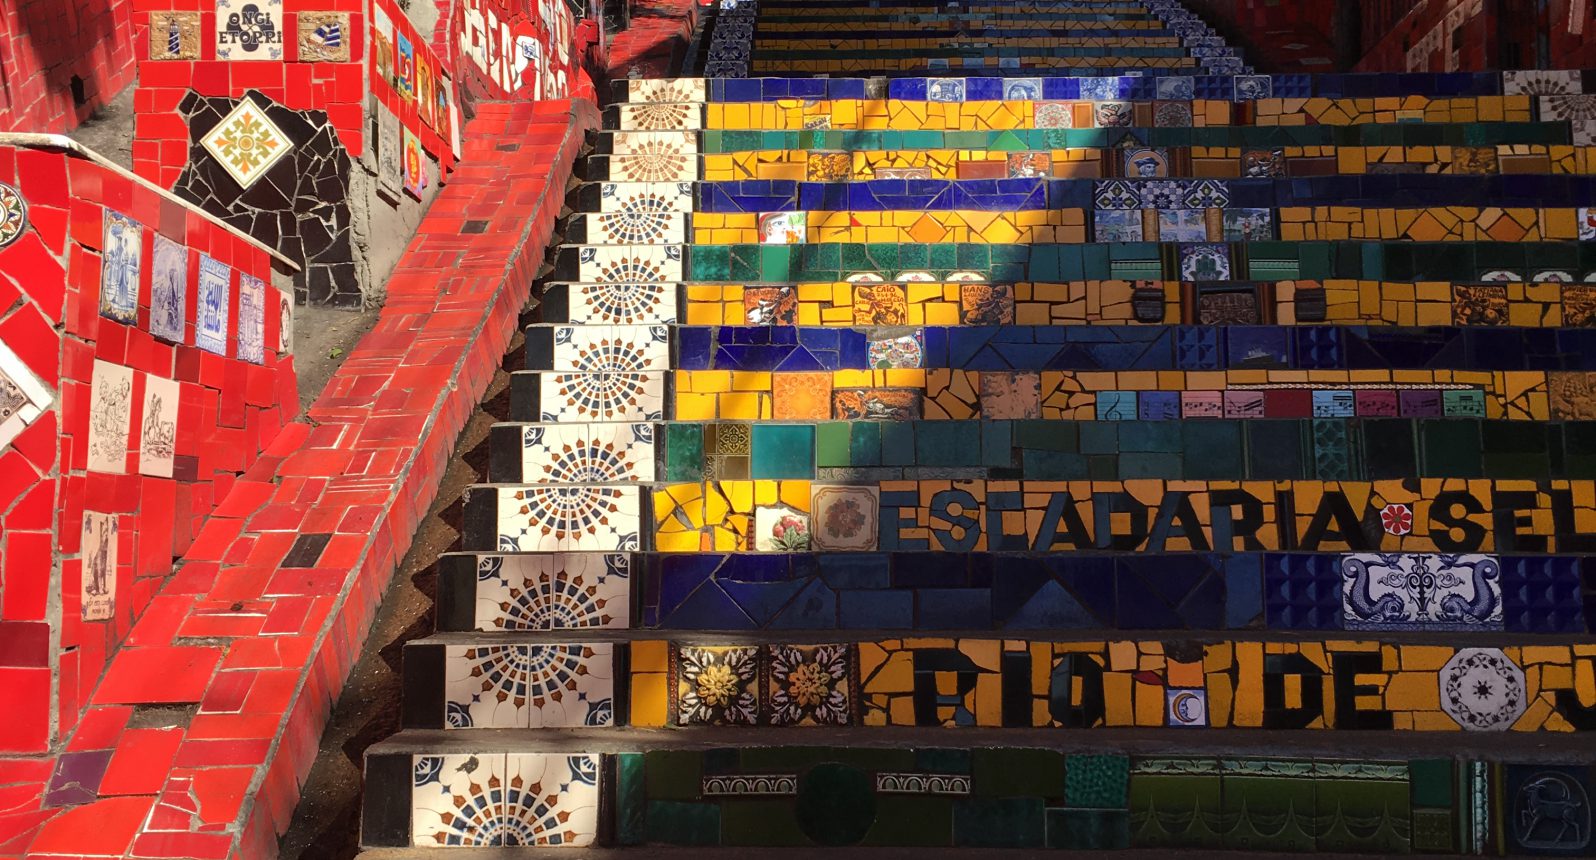 Escadaria Selarón, Rio de Janeiro, Brazil